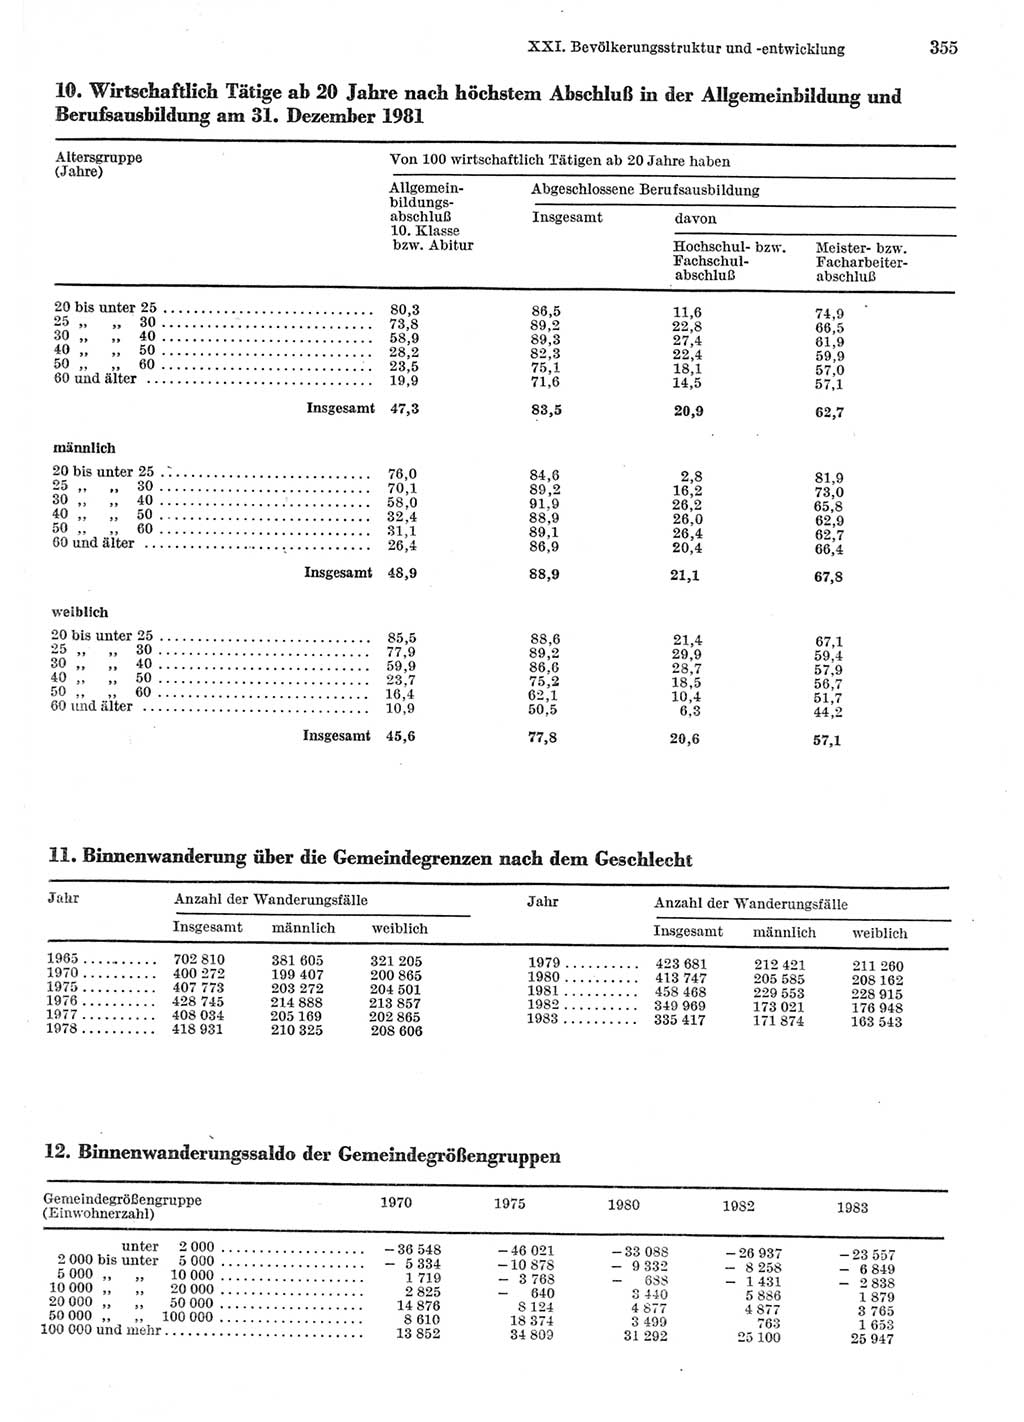 Statistisches Jahrbuch der Deutschen Demokratischen Republik (DDR) 1985, Seite 355 (Stat. Jb. DDR 1985, S. 355)